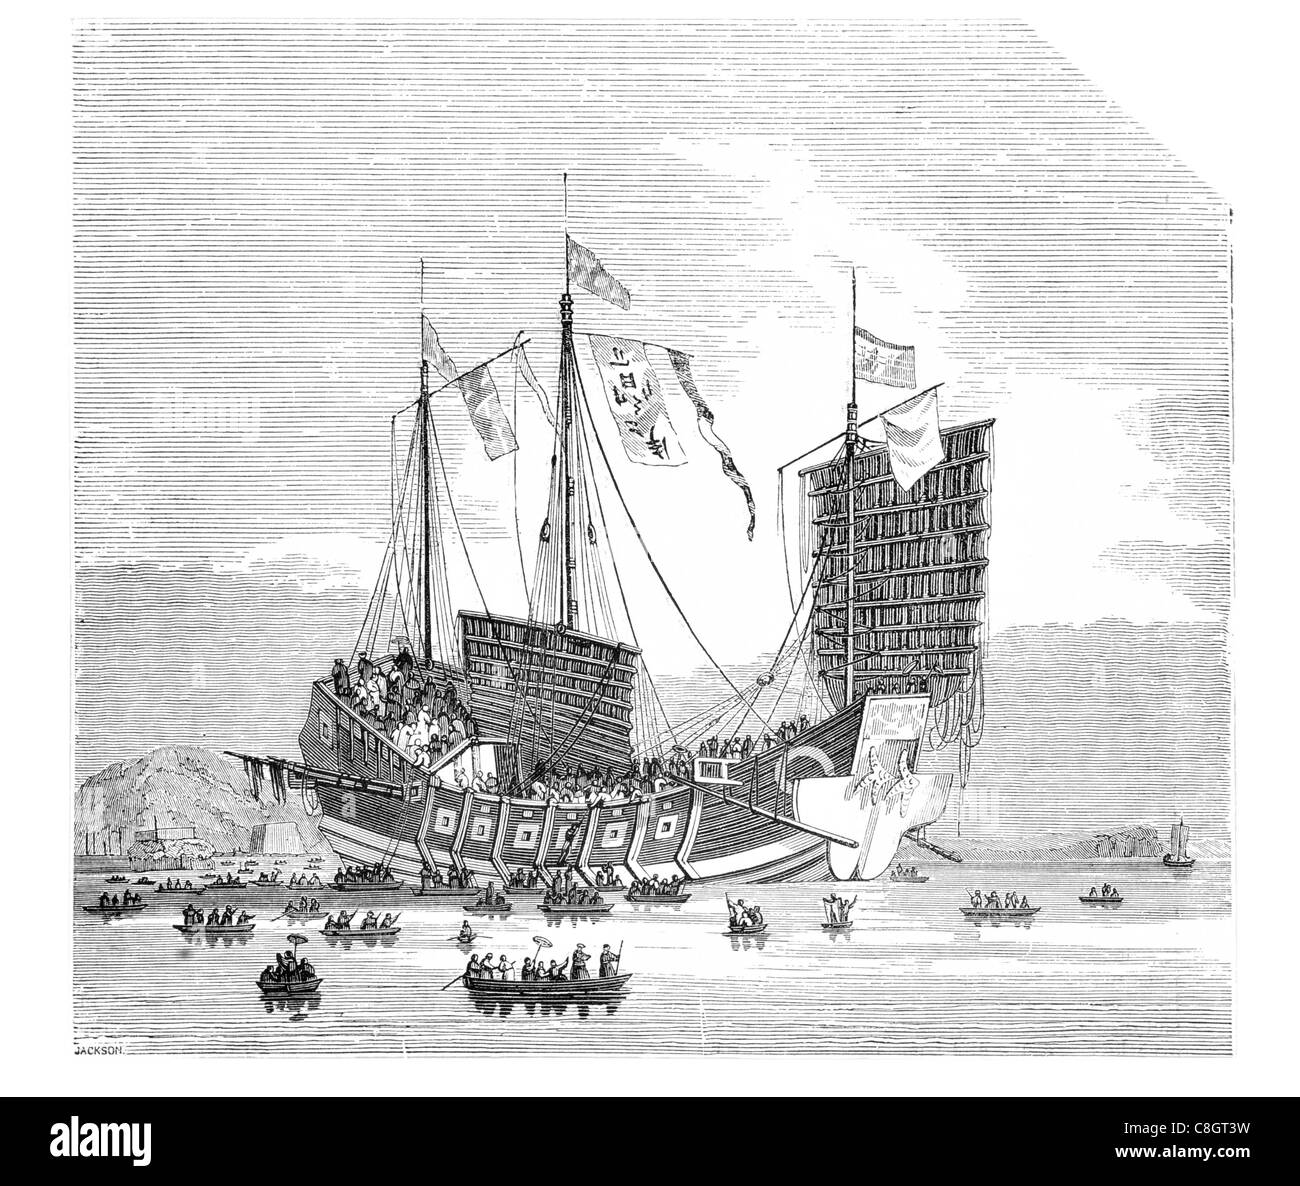 Commercial chinois junk Chine ancienne, navire à voile de jonques de la dynastie des Han Hong Kong Asie voyage en mer voilier gréé en jonque Banque D'Images